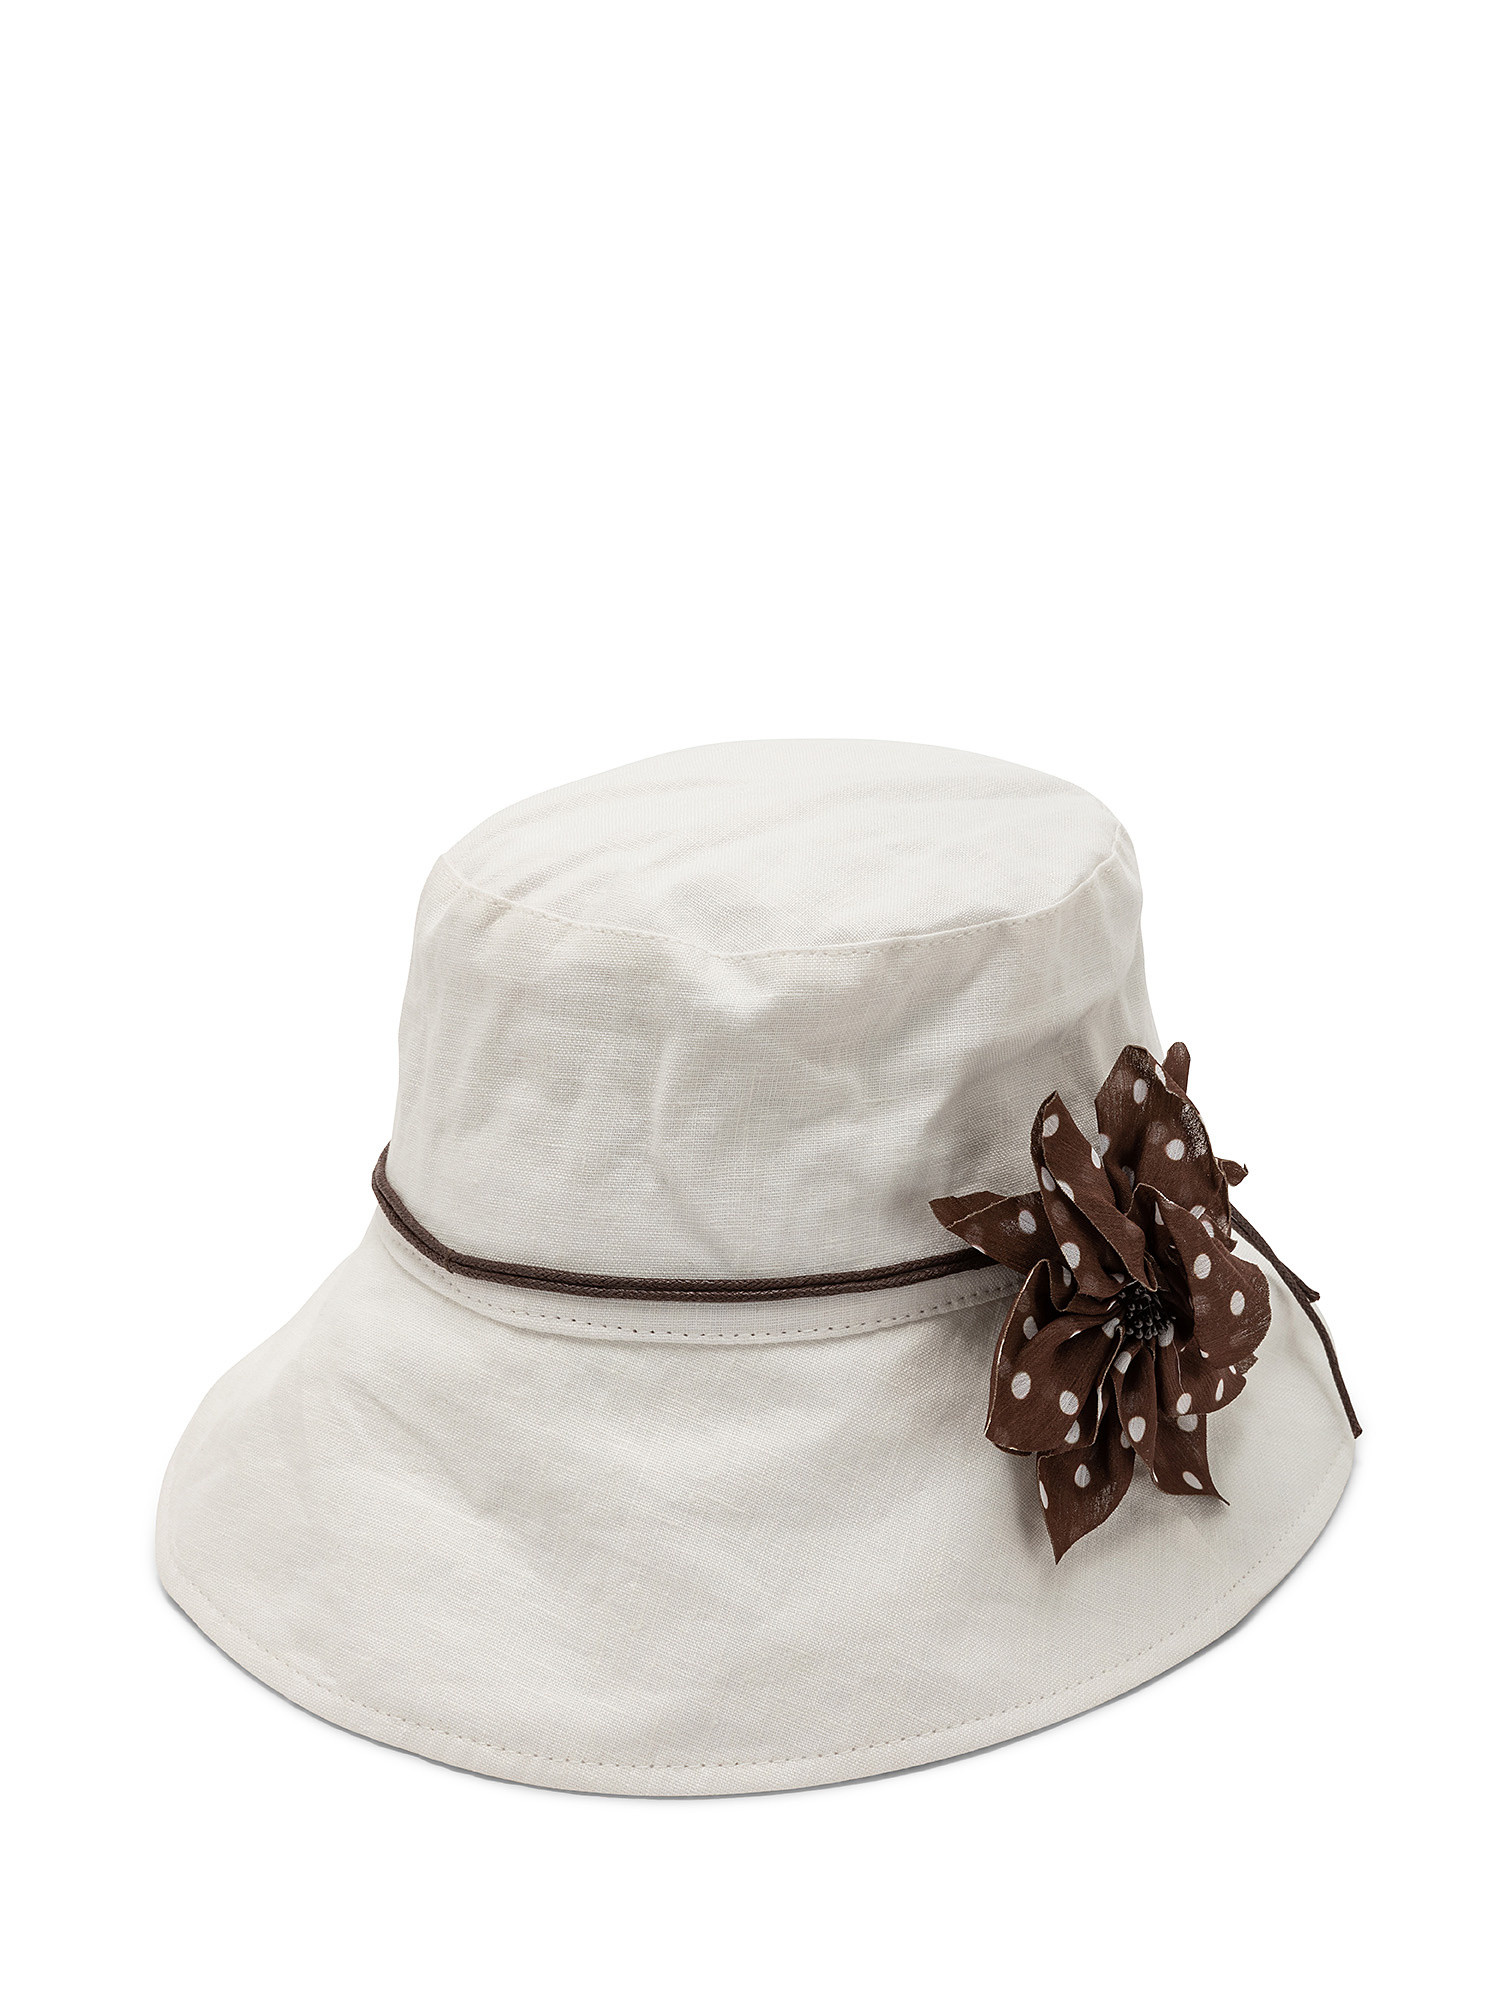 Cappello puro lino con fiore, Bianco, large